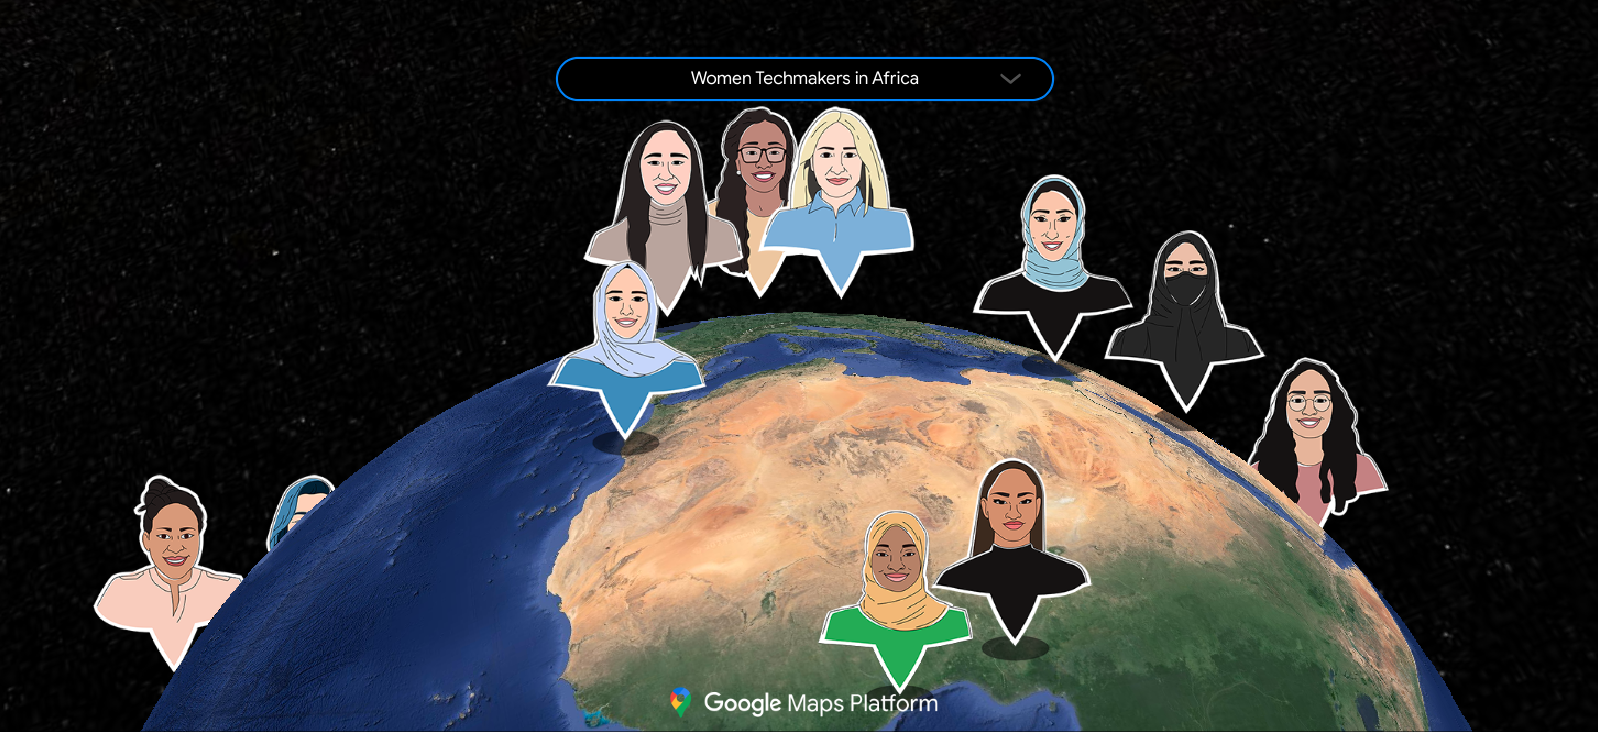 خريطة تعرض الشبكة العالمية لسفيرات Women Techmakers، في شكل مجموعة متنوعة من الأشخاص الذين تم وضعهم على خريطة وفقًا لبلدانهم